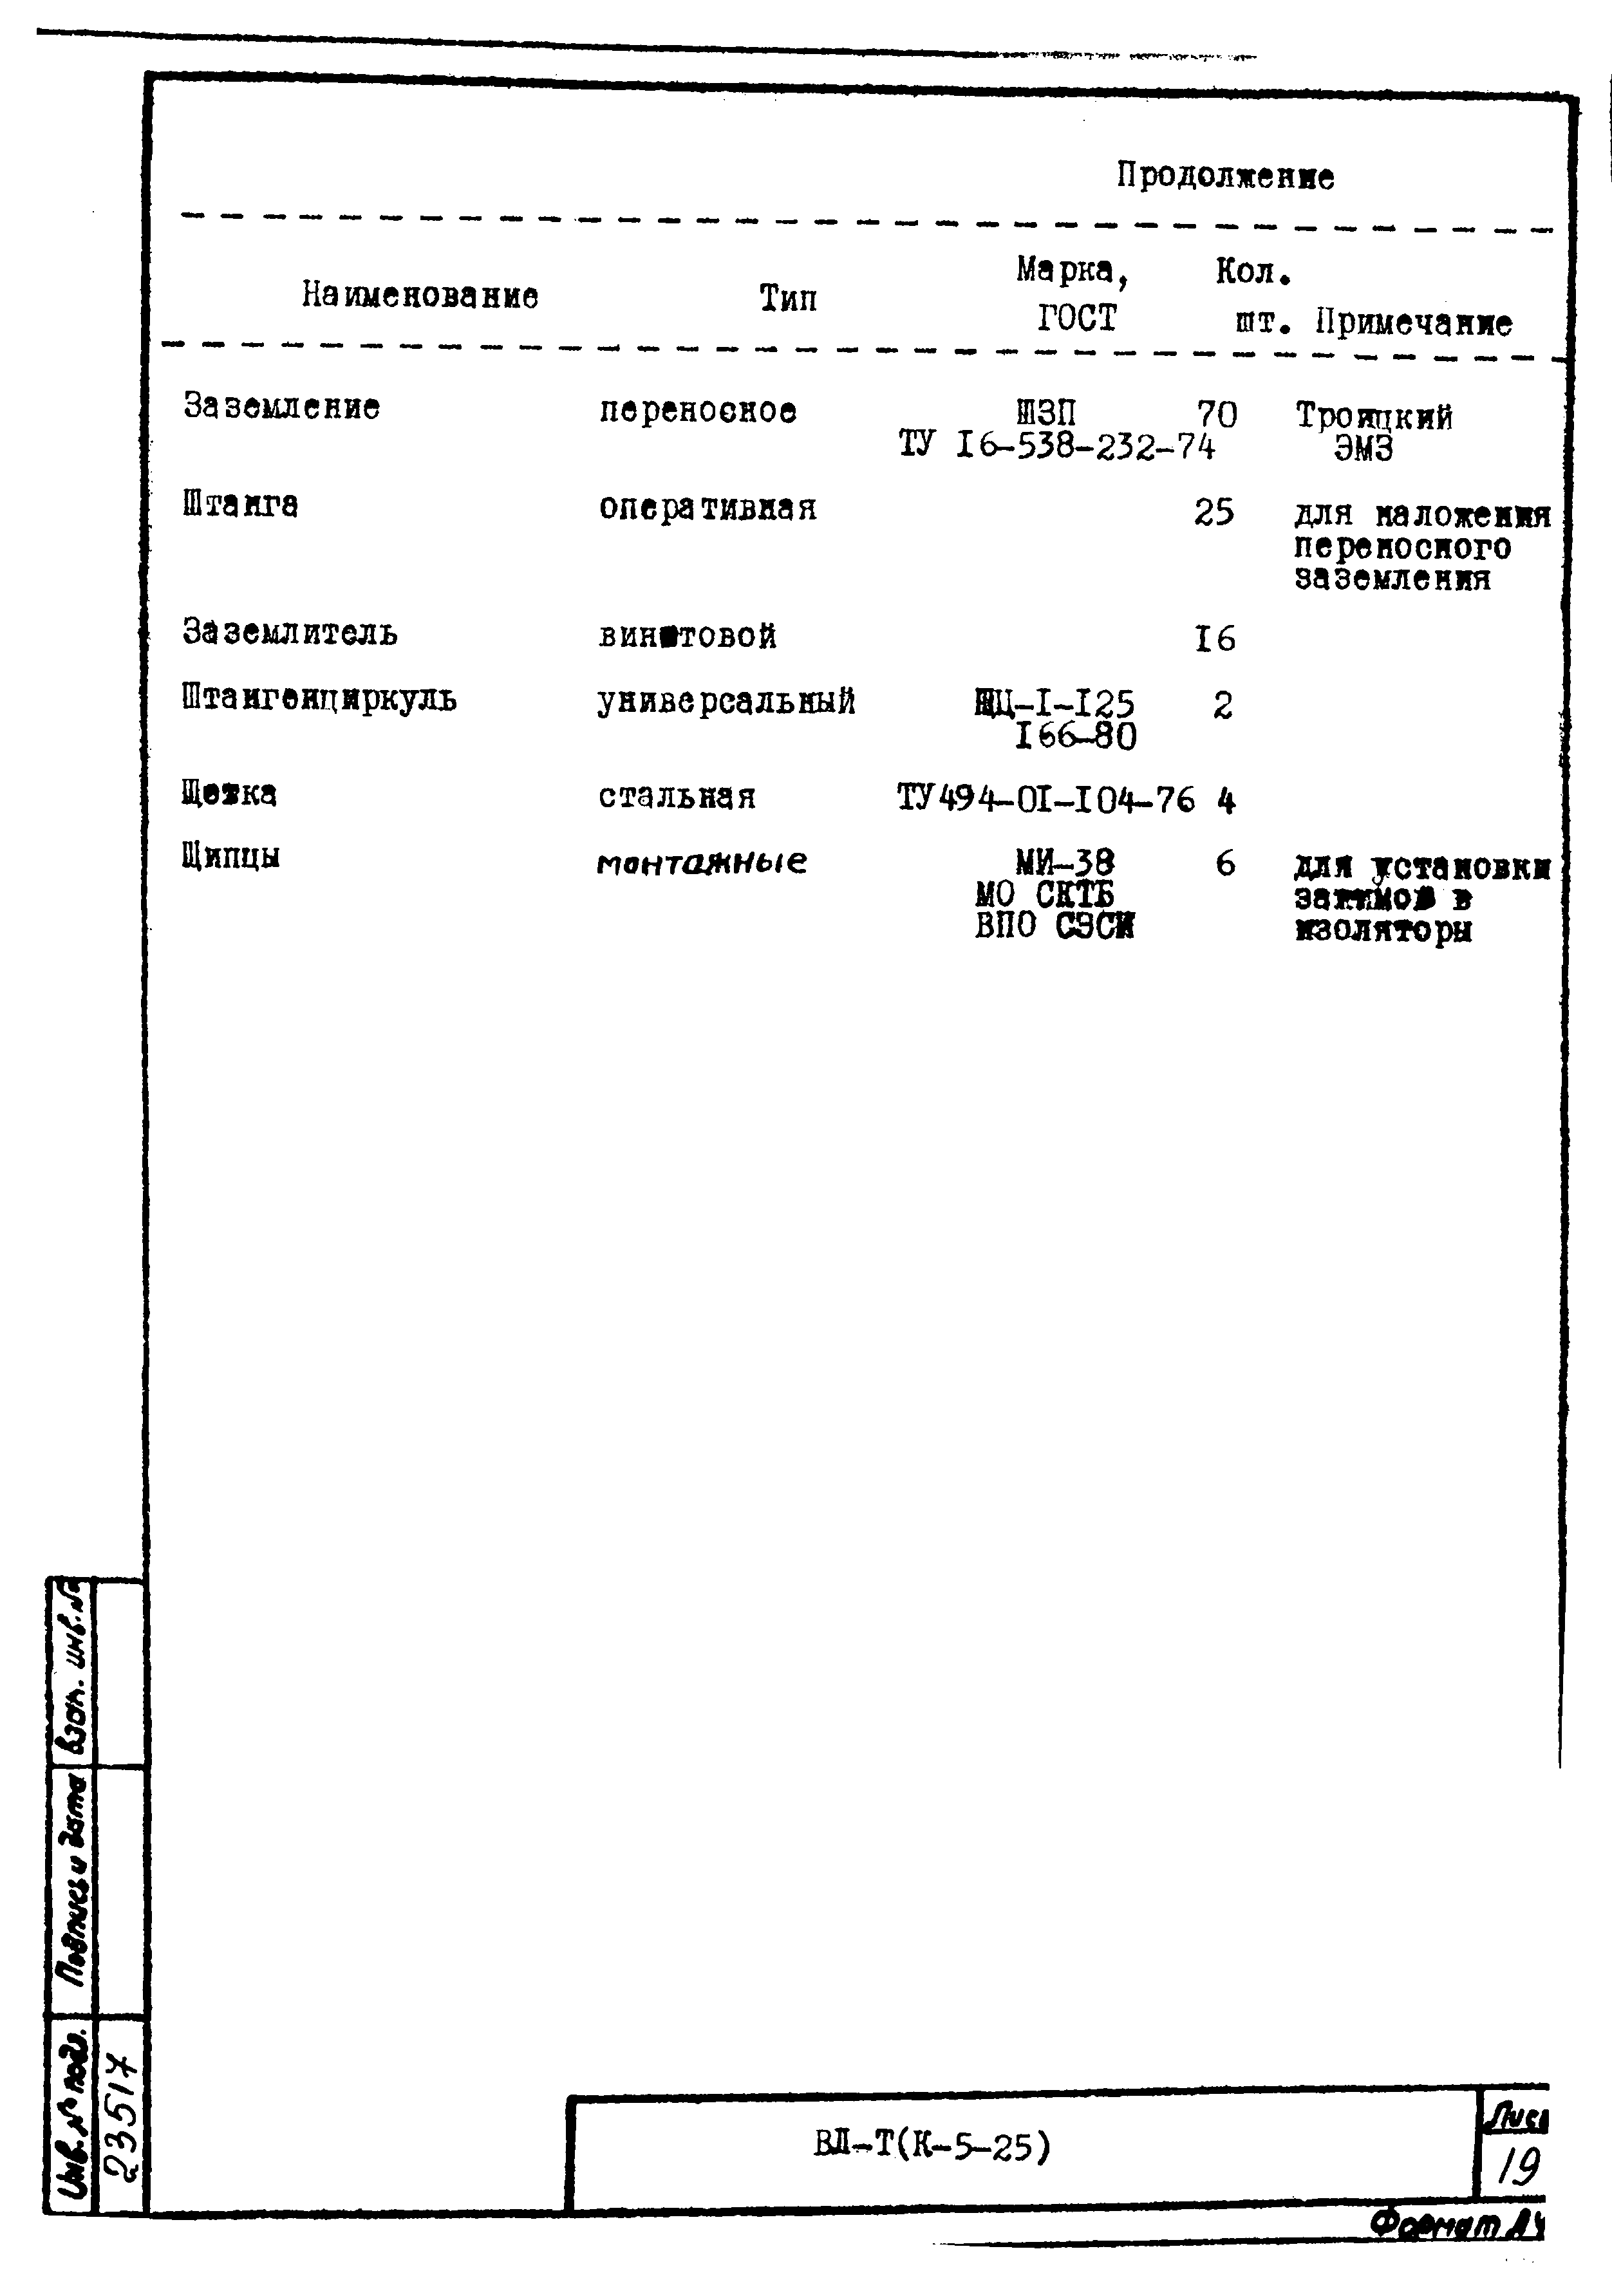 Технологическая карта К-5-25-8